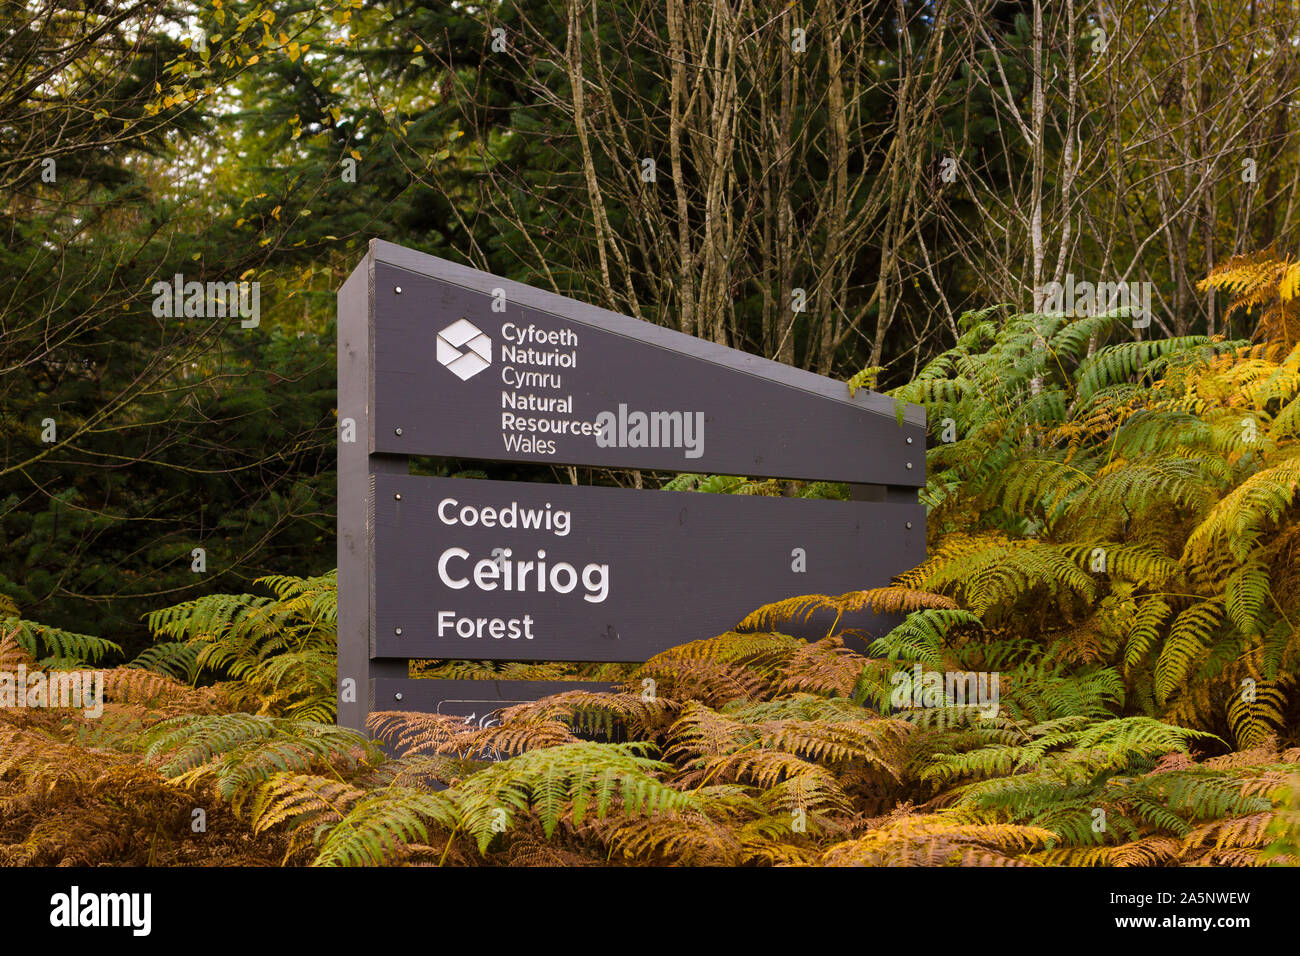 NRW oder die natürlichen Ressourcen Wales Zeichen in der ceiriog Wald Plantage im Norden von Wales. Die walisische Regierung Agentur verantwortlich für die Umwelt Stockfoto